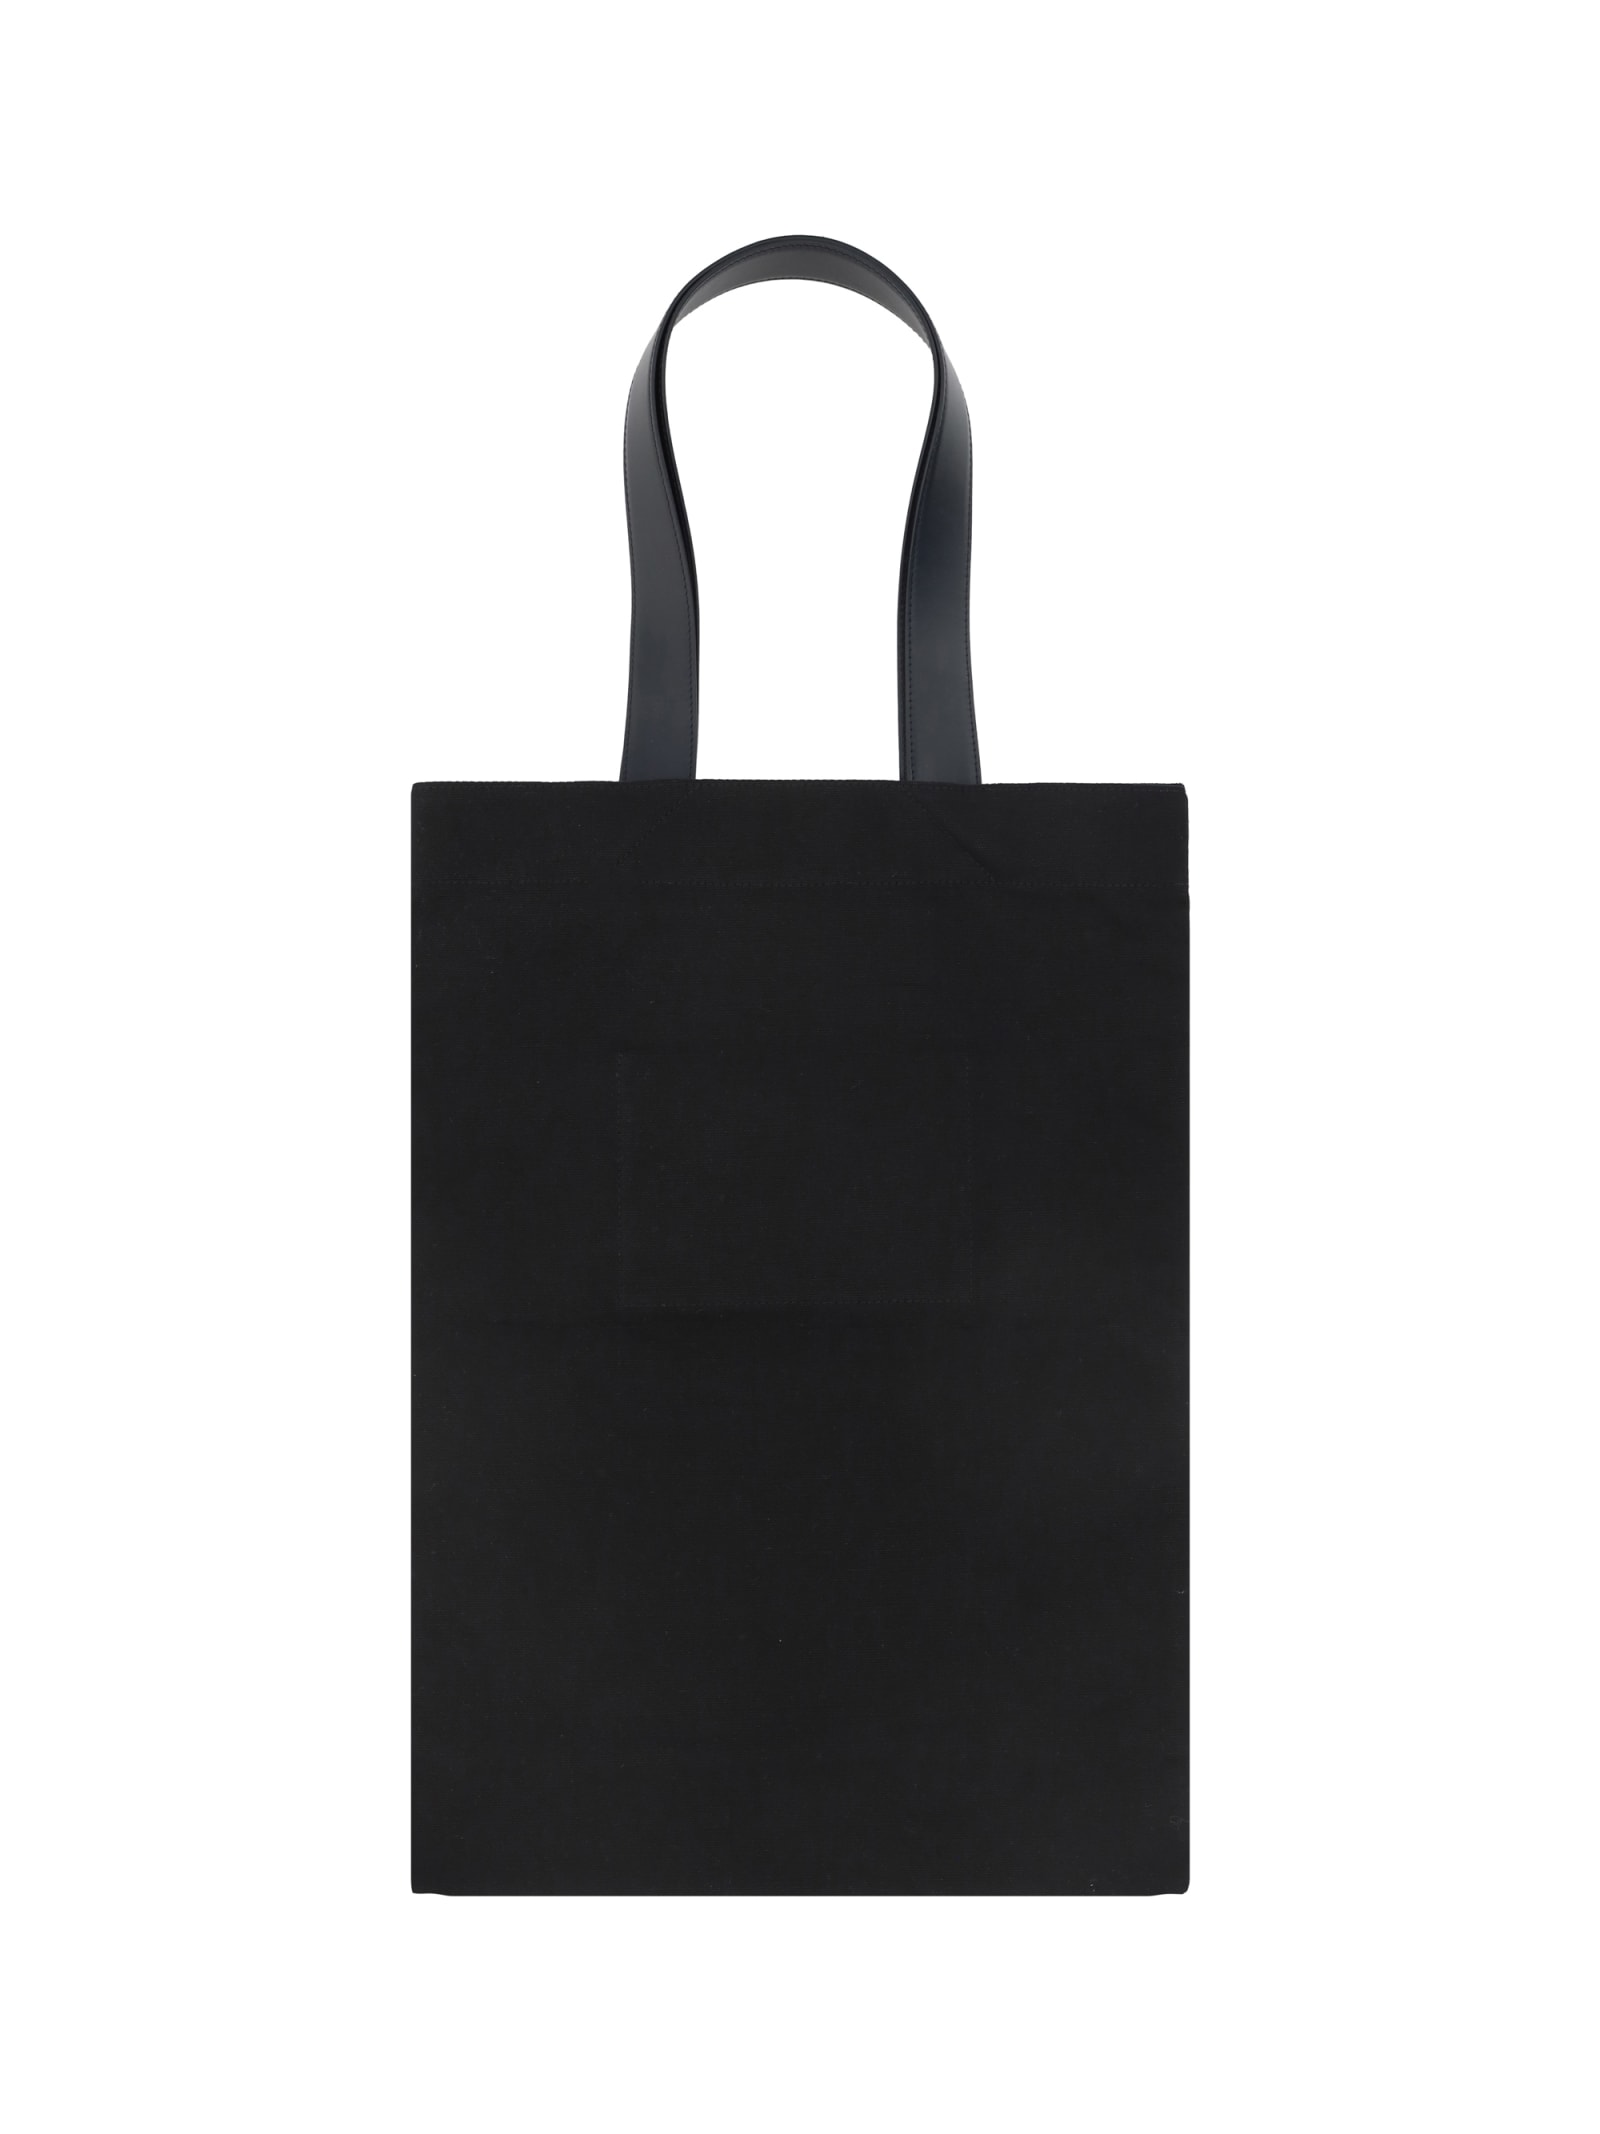 Shop Jil Sander Tote Shoulder Bag In Nero